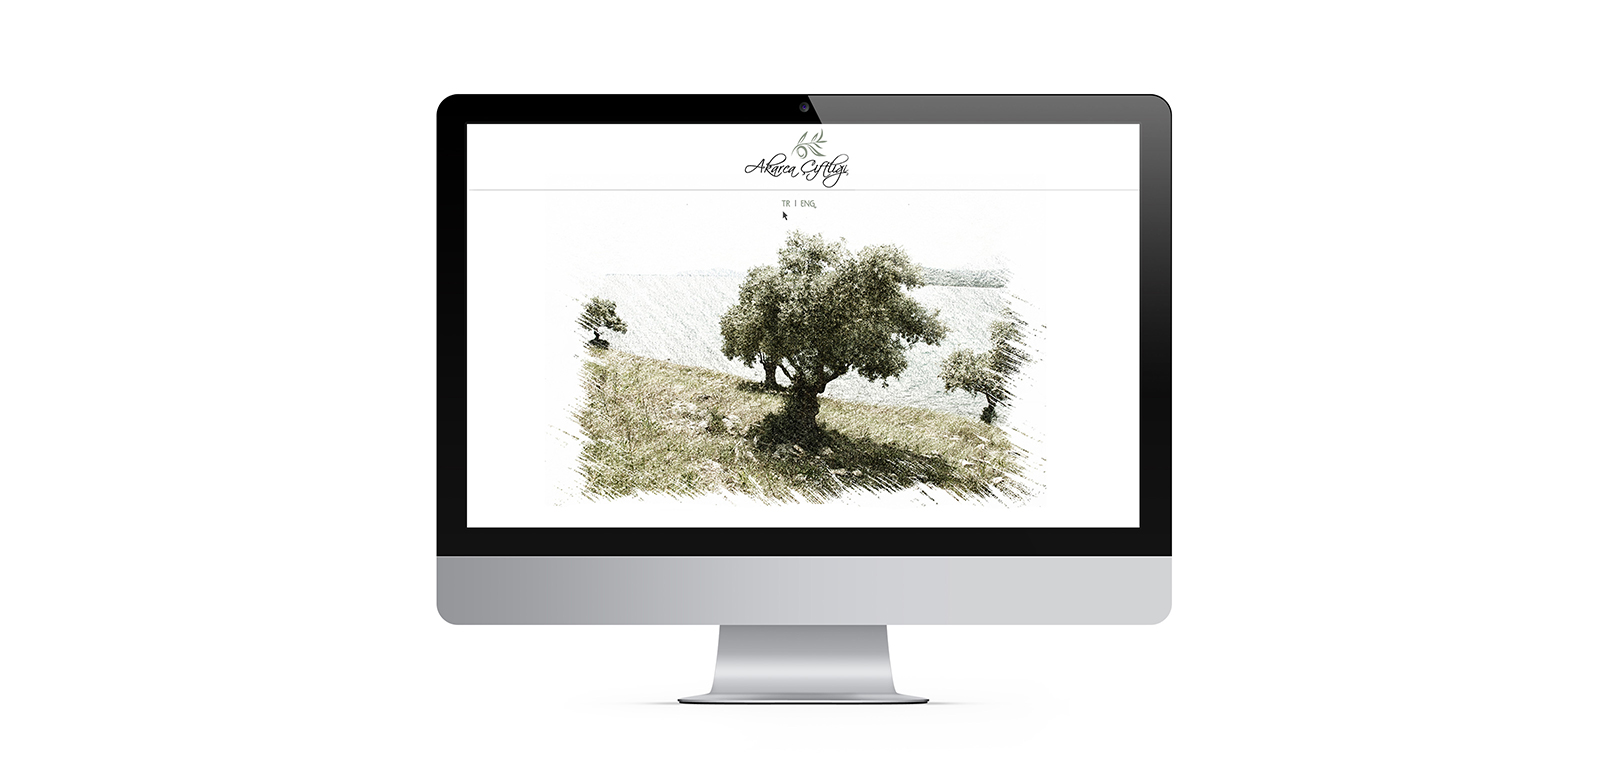 Akarca Çiftliği Corporate Website 1